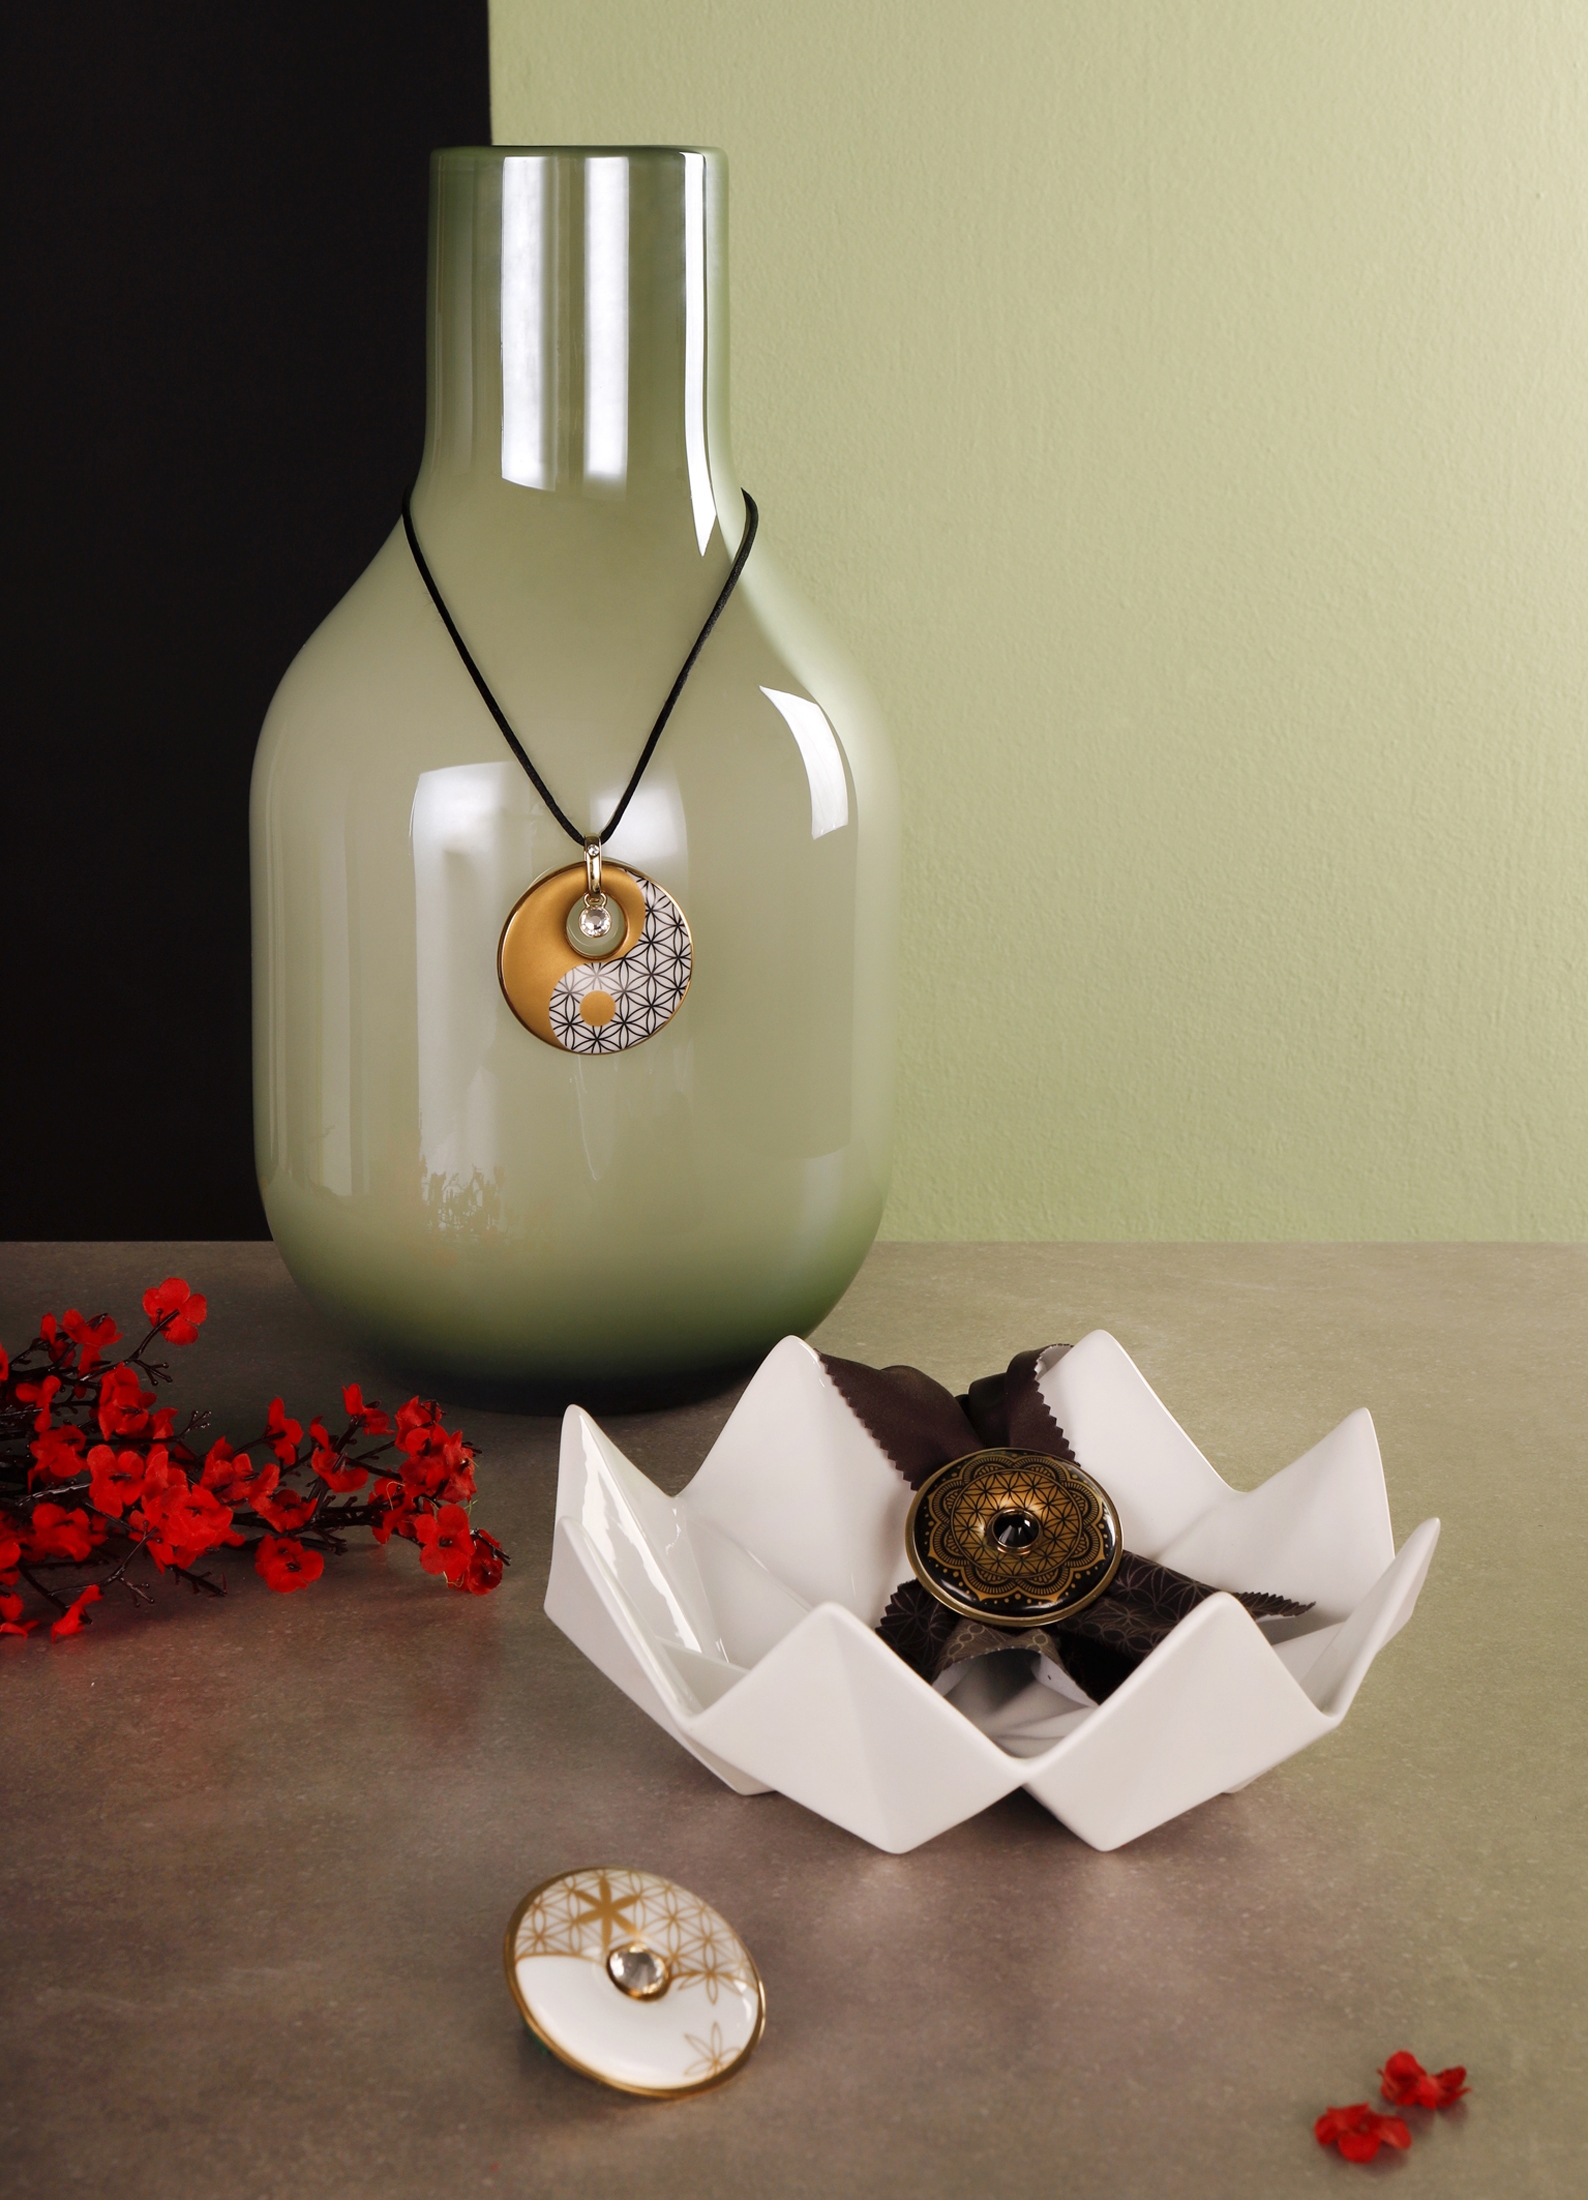 Goebel - Blume des Lebens - Lotus - Brosche schwarz-gold